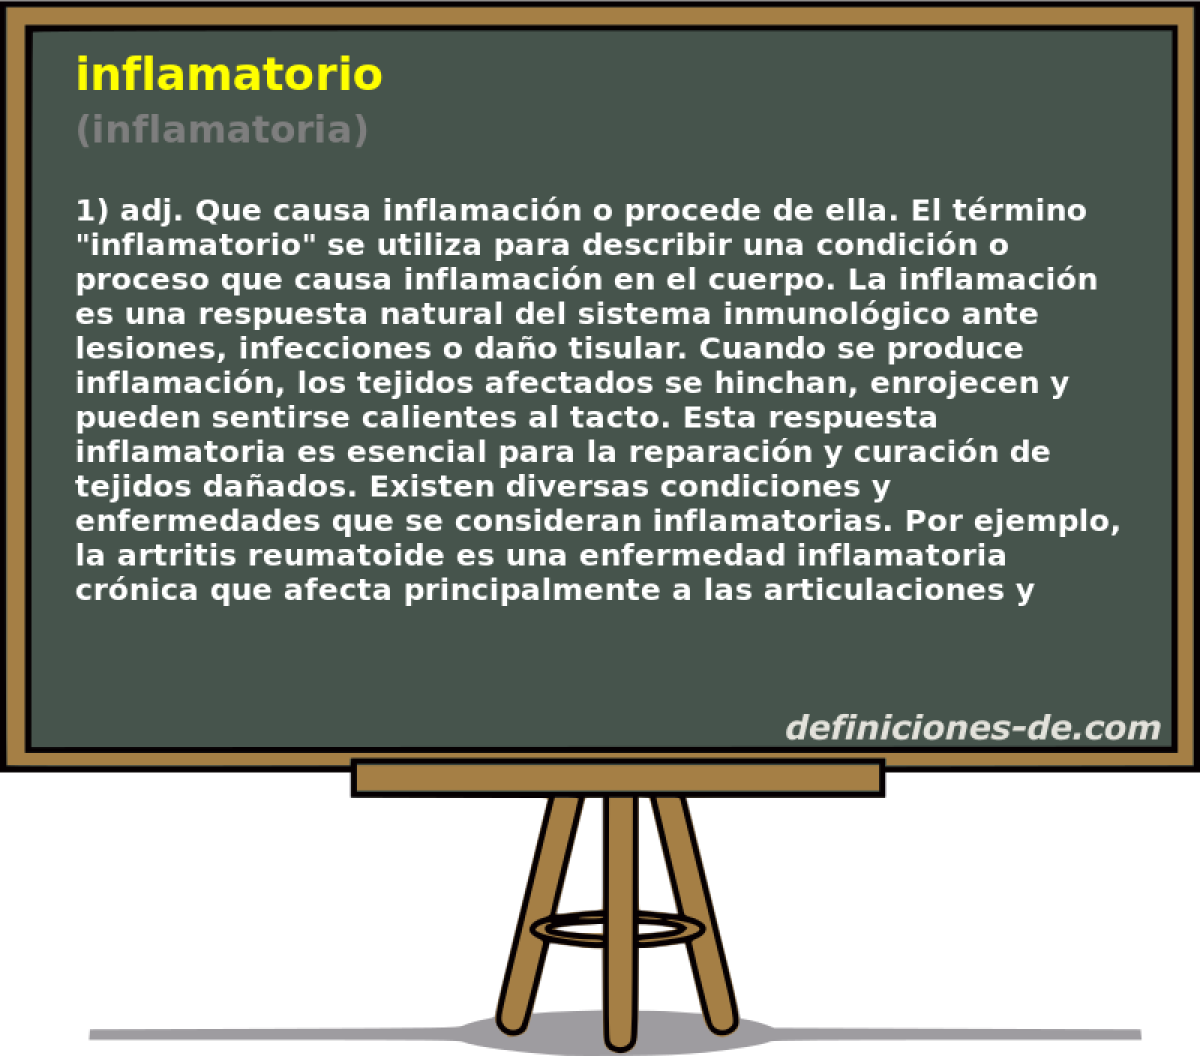 inflamatorio (inflamatoria)